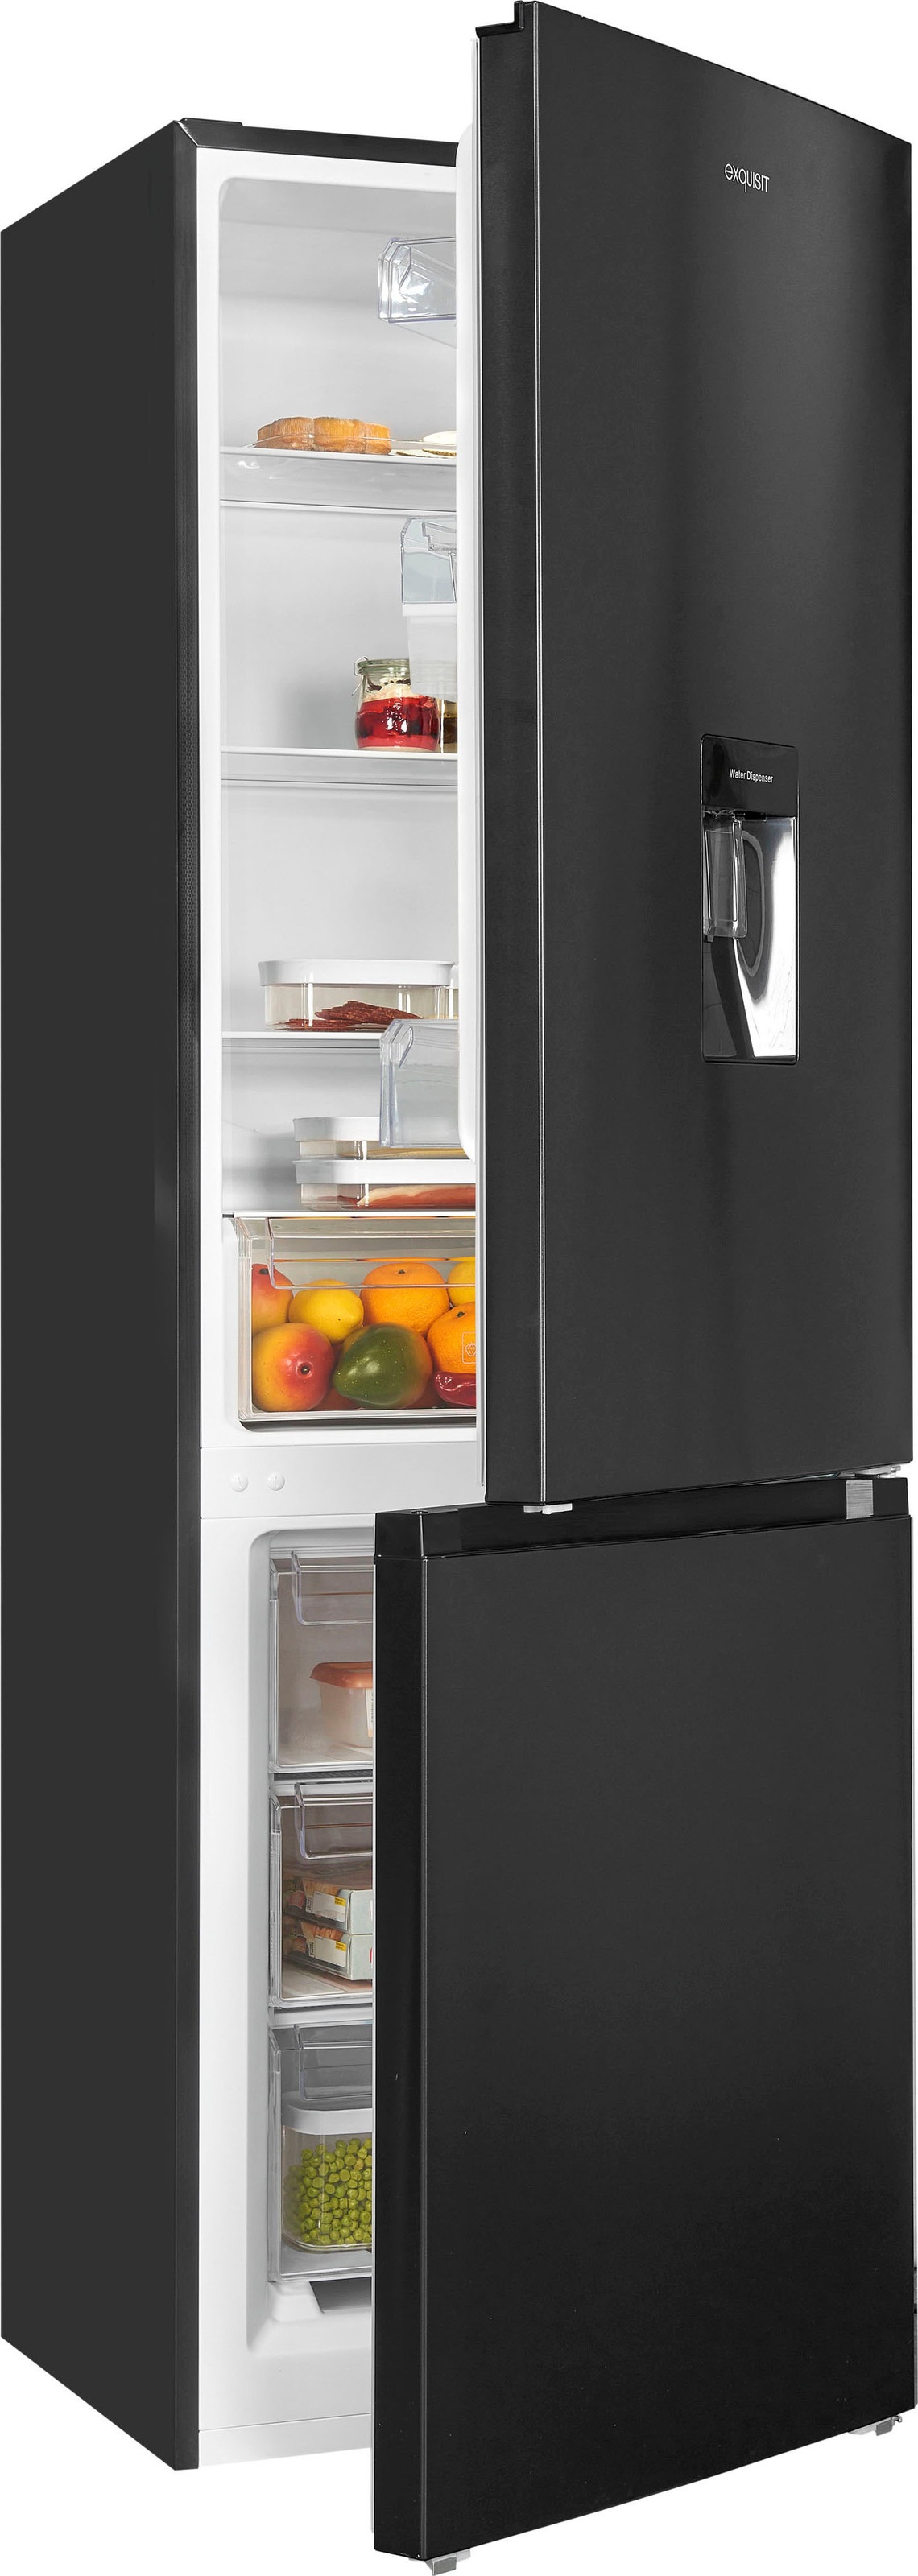 Exquisit Kühlschränke auf kaufen Rechnung Universal. hat ▻ Jeder sein